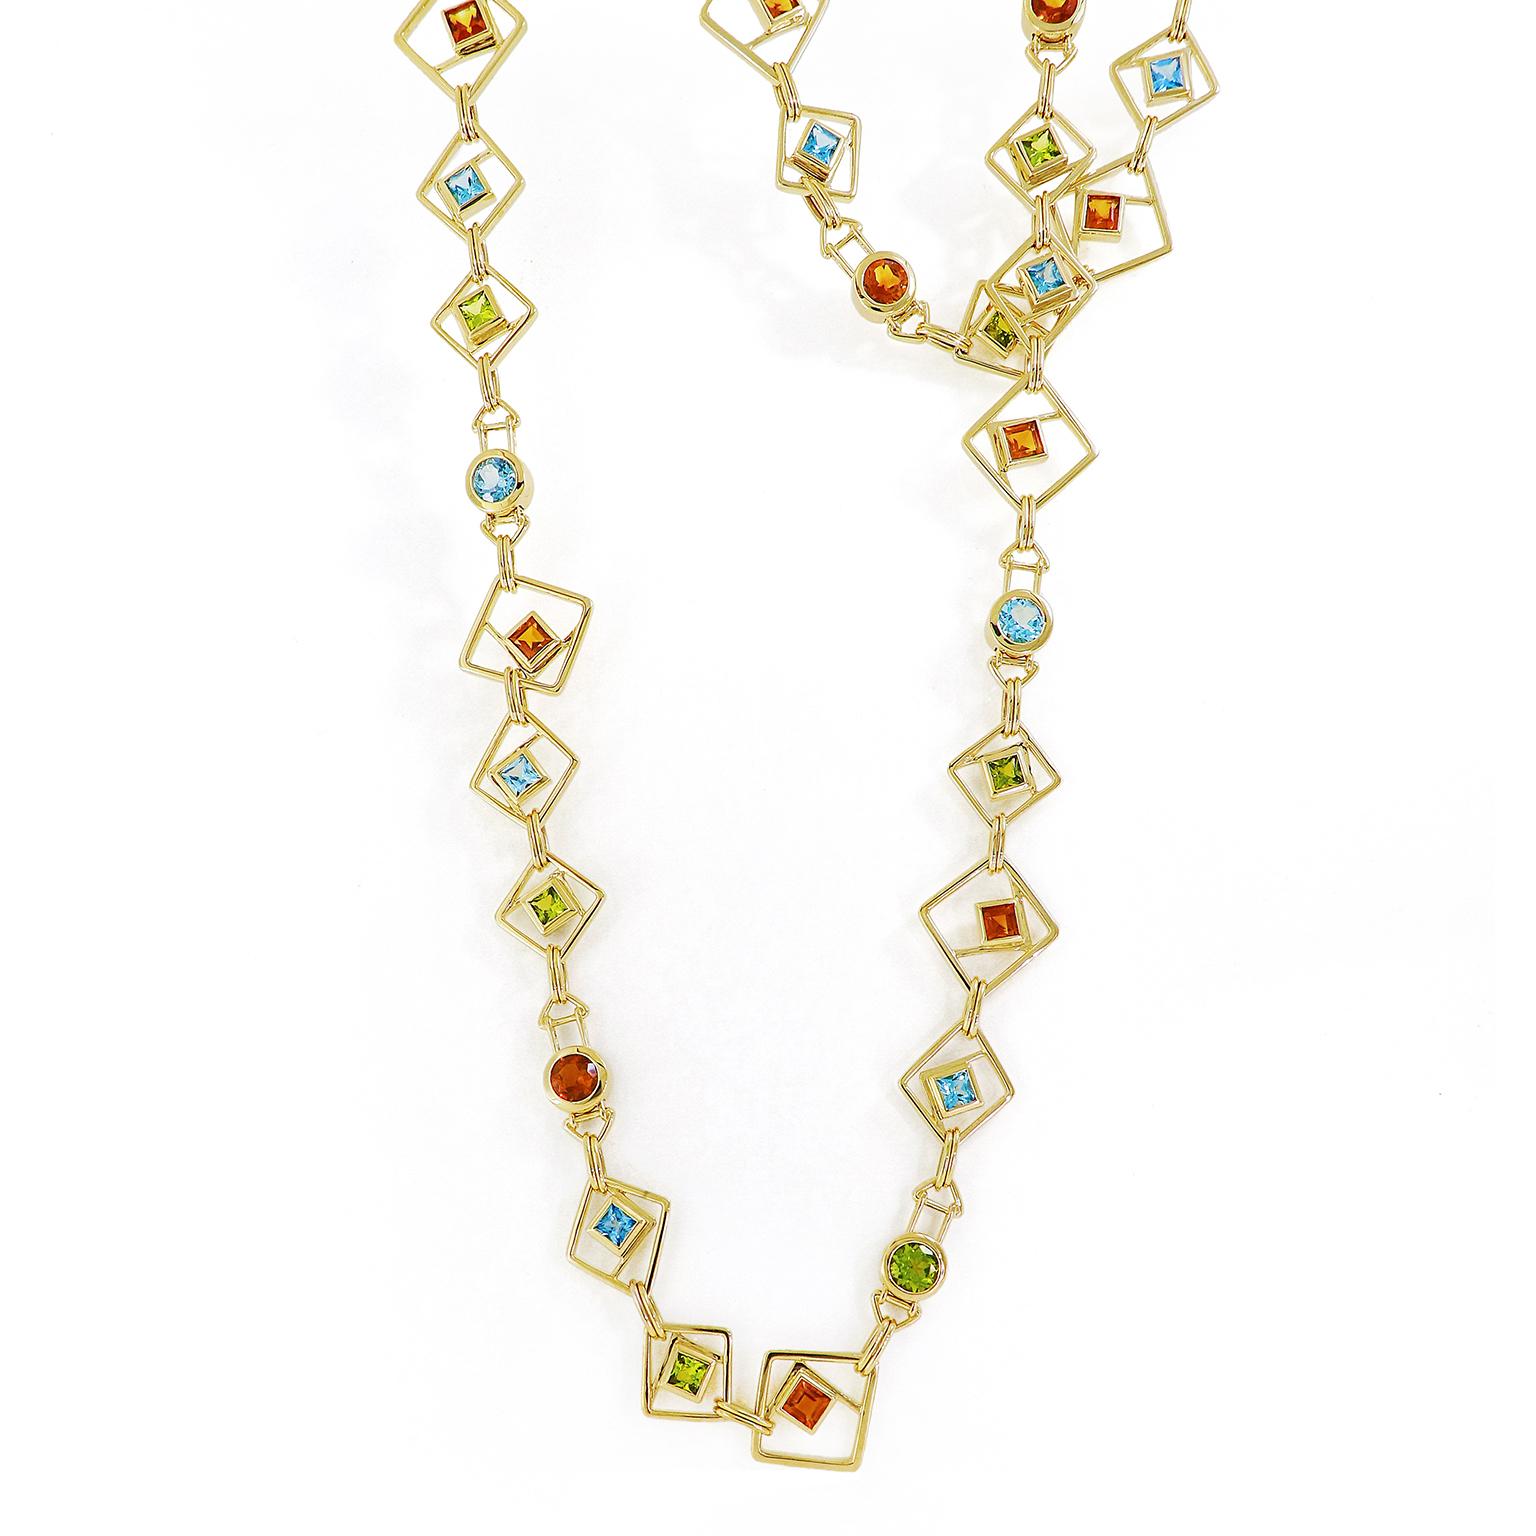 Peridot, Blautopas und Citrin bilden ein harmonisches Trio von Farben, die in reichem 18-karätigem Gelbgold glänzen. Geometrische Formen machen das Muster dieser Halskette interessant. Das Design besteht aus 18-karätigen Gelbgolddrähten, die drei